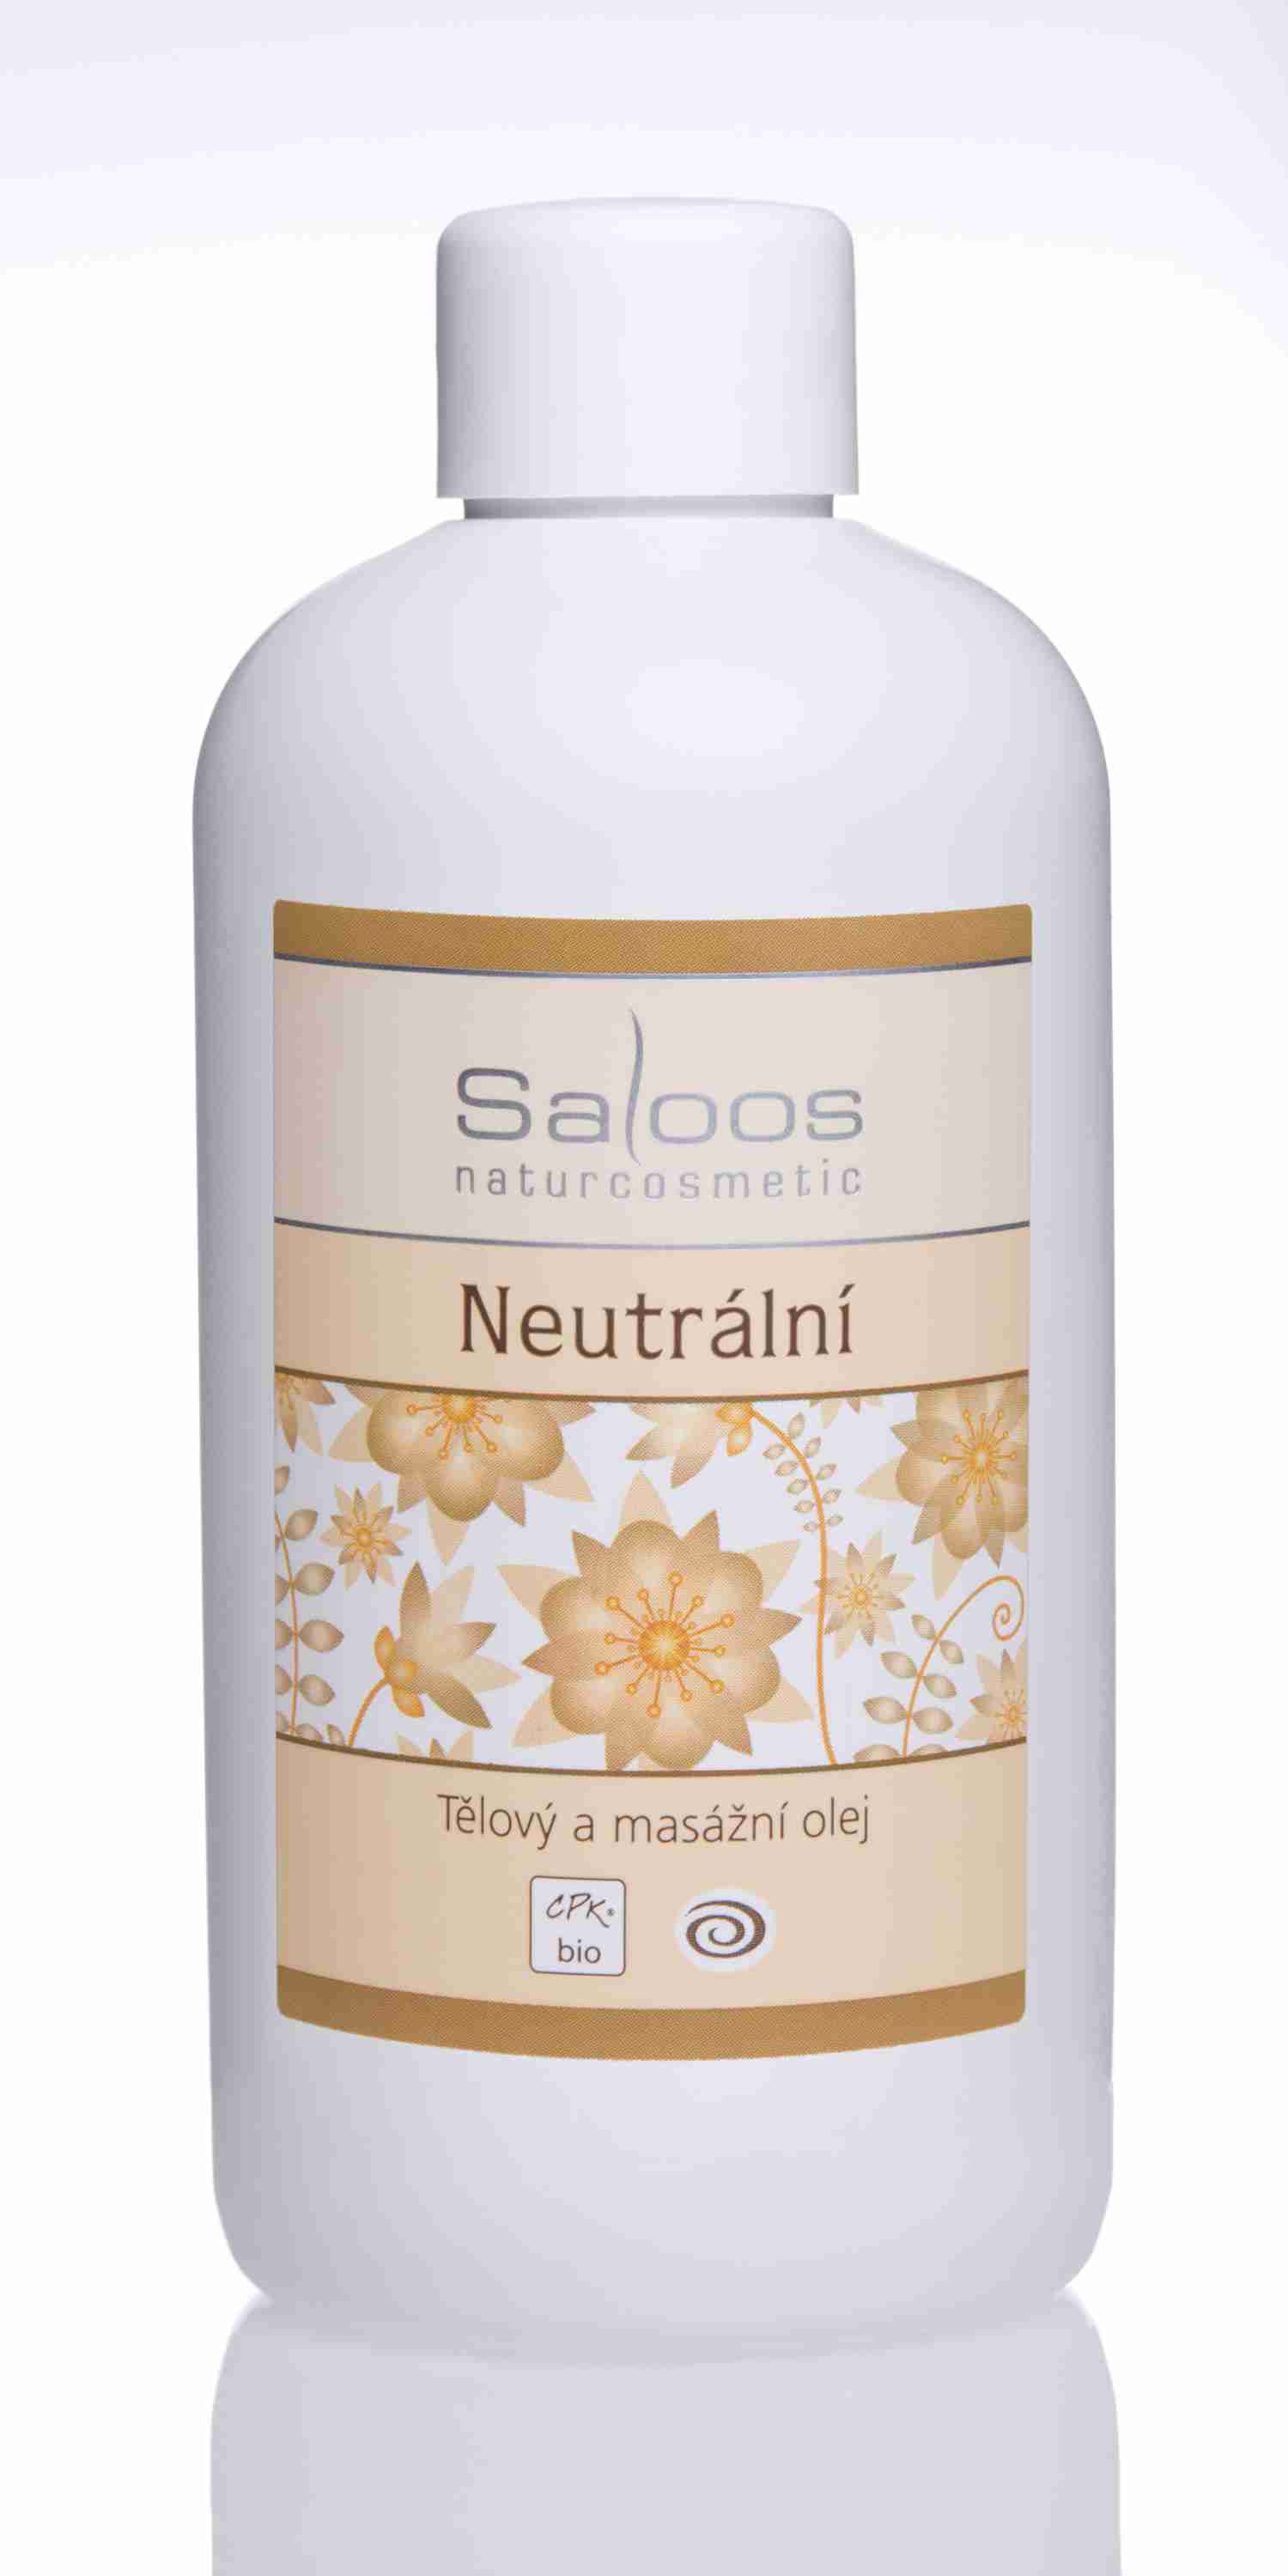 Saloos Bio Neutrální - tělový a masážní olej Balení: 1000 ml